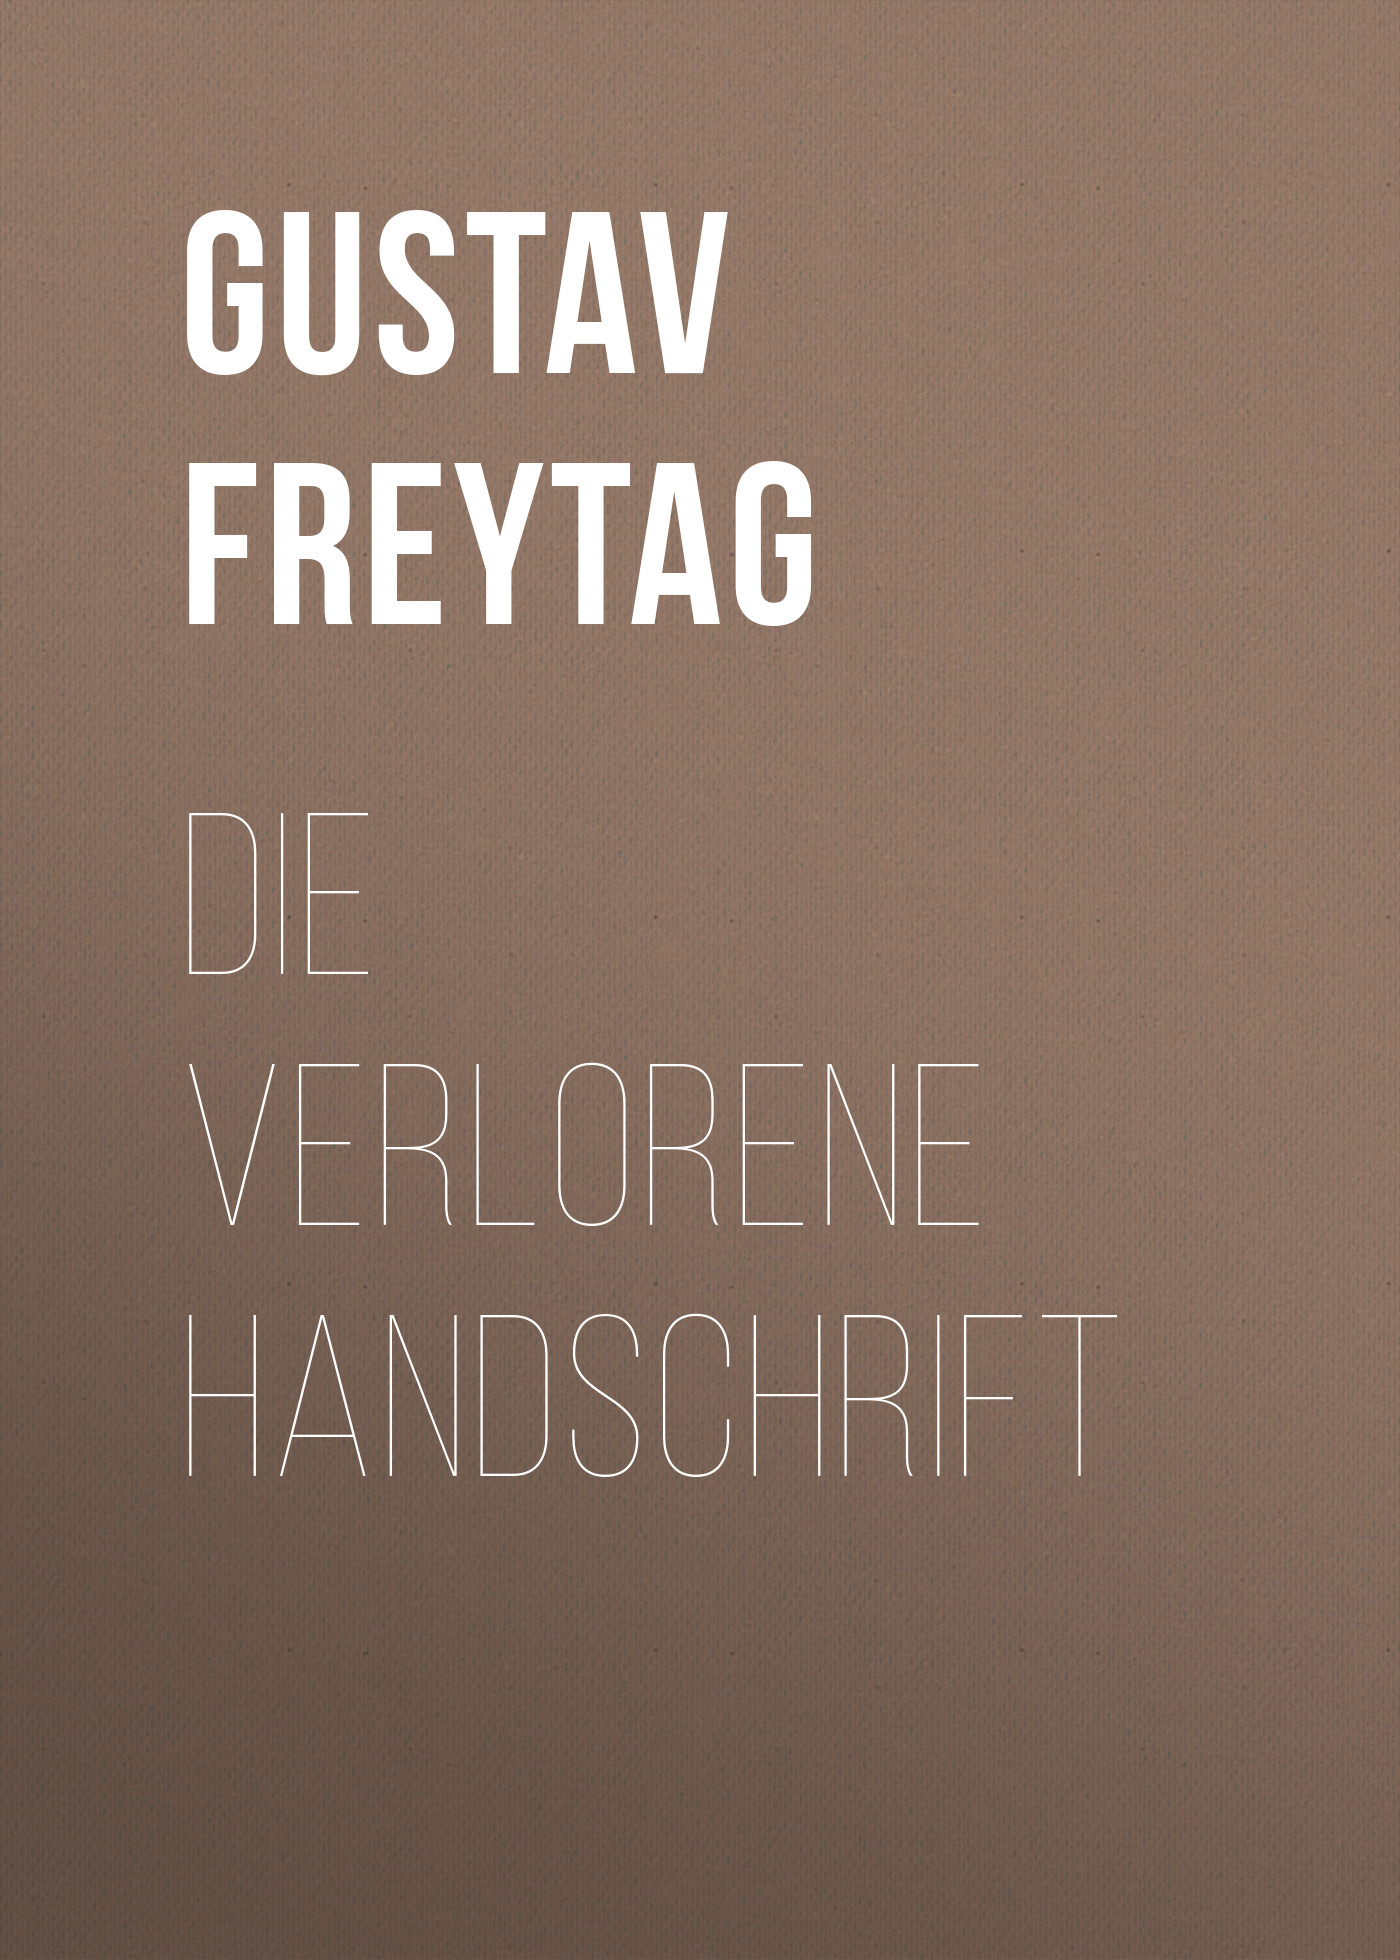 Книга Die verlorene Handschrift из серии , созданная Gustav Freytag, может относится к жанру Зарубежная классика. Стоимость электронной книги Die verlorene Handschrift с идентификатором 48633388 составляет 0 руб.